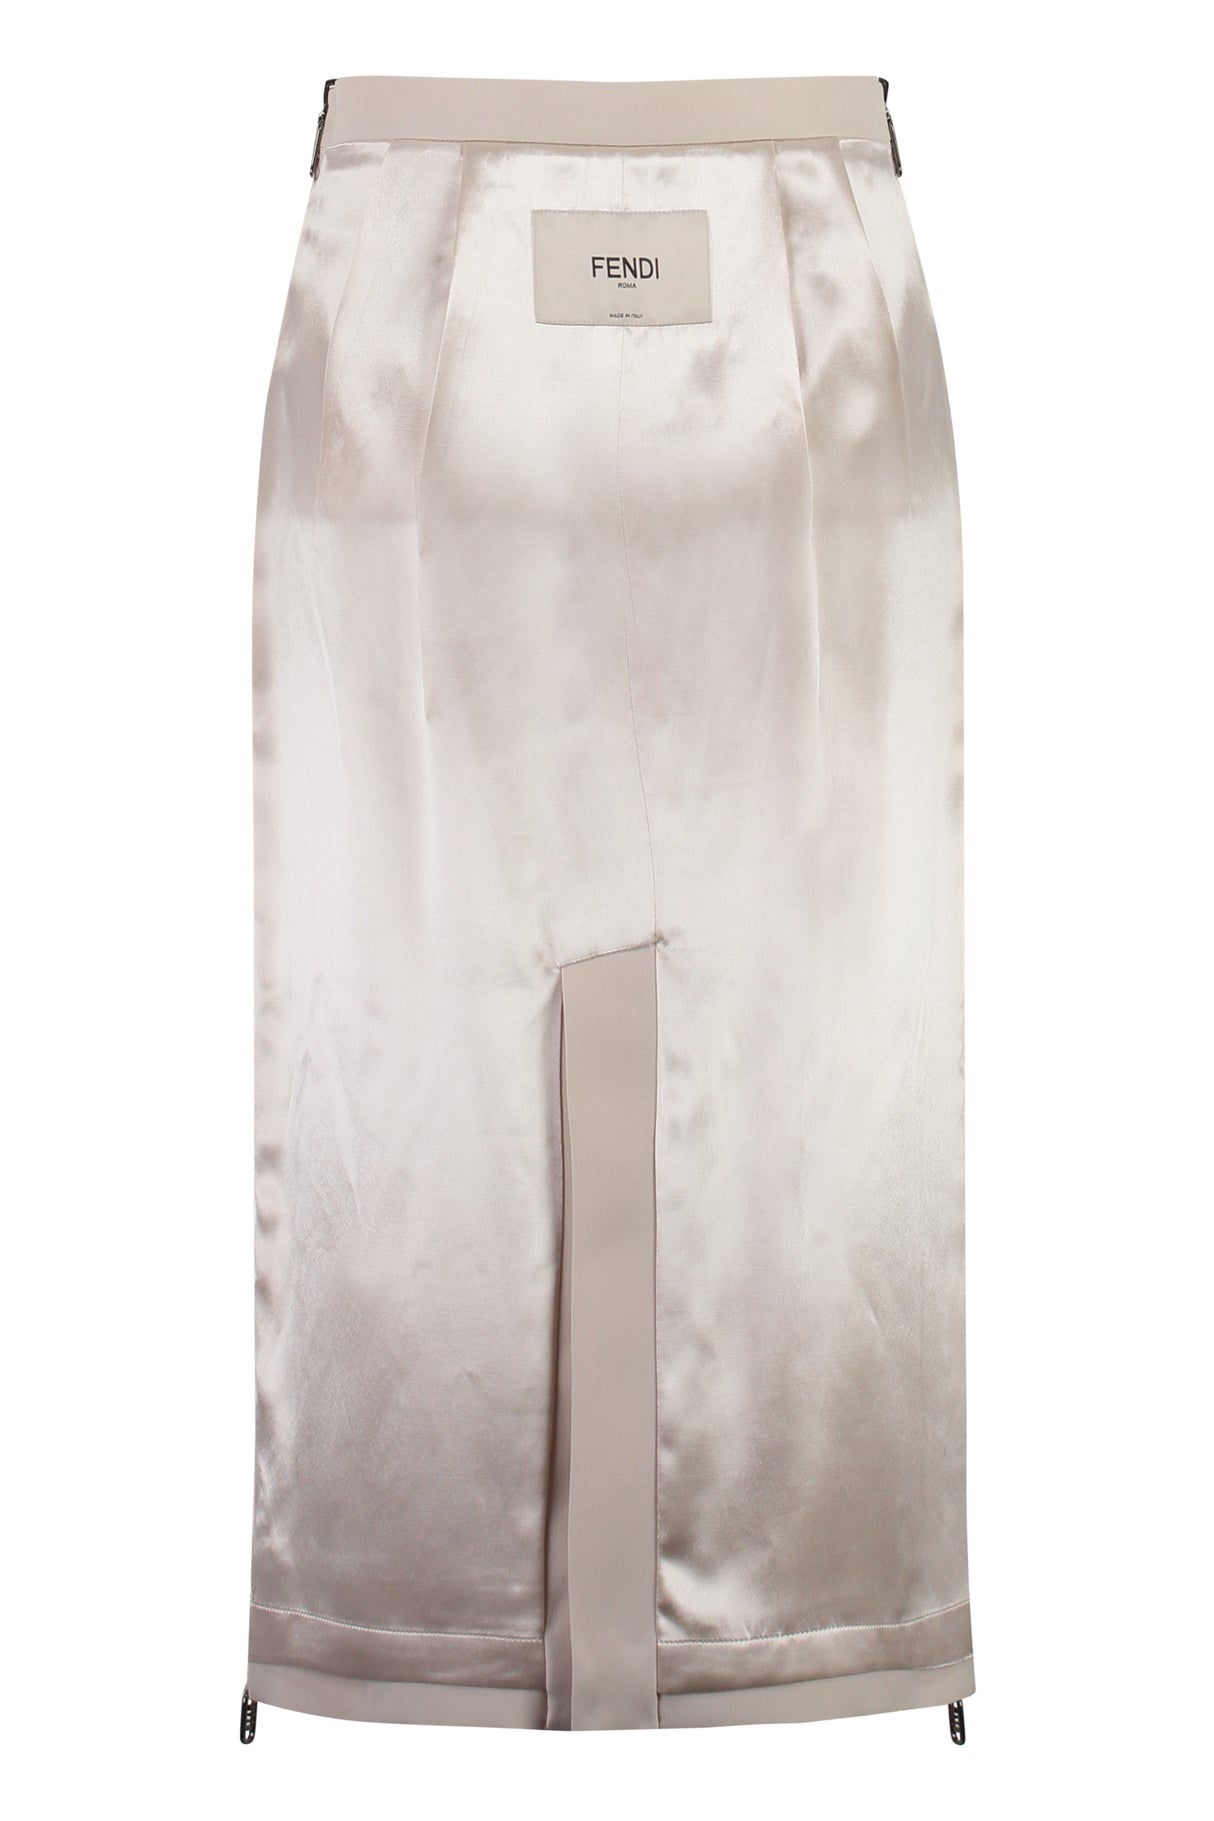 白い伸縮性のあるレディースペンシルスカート